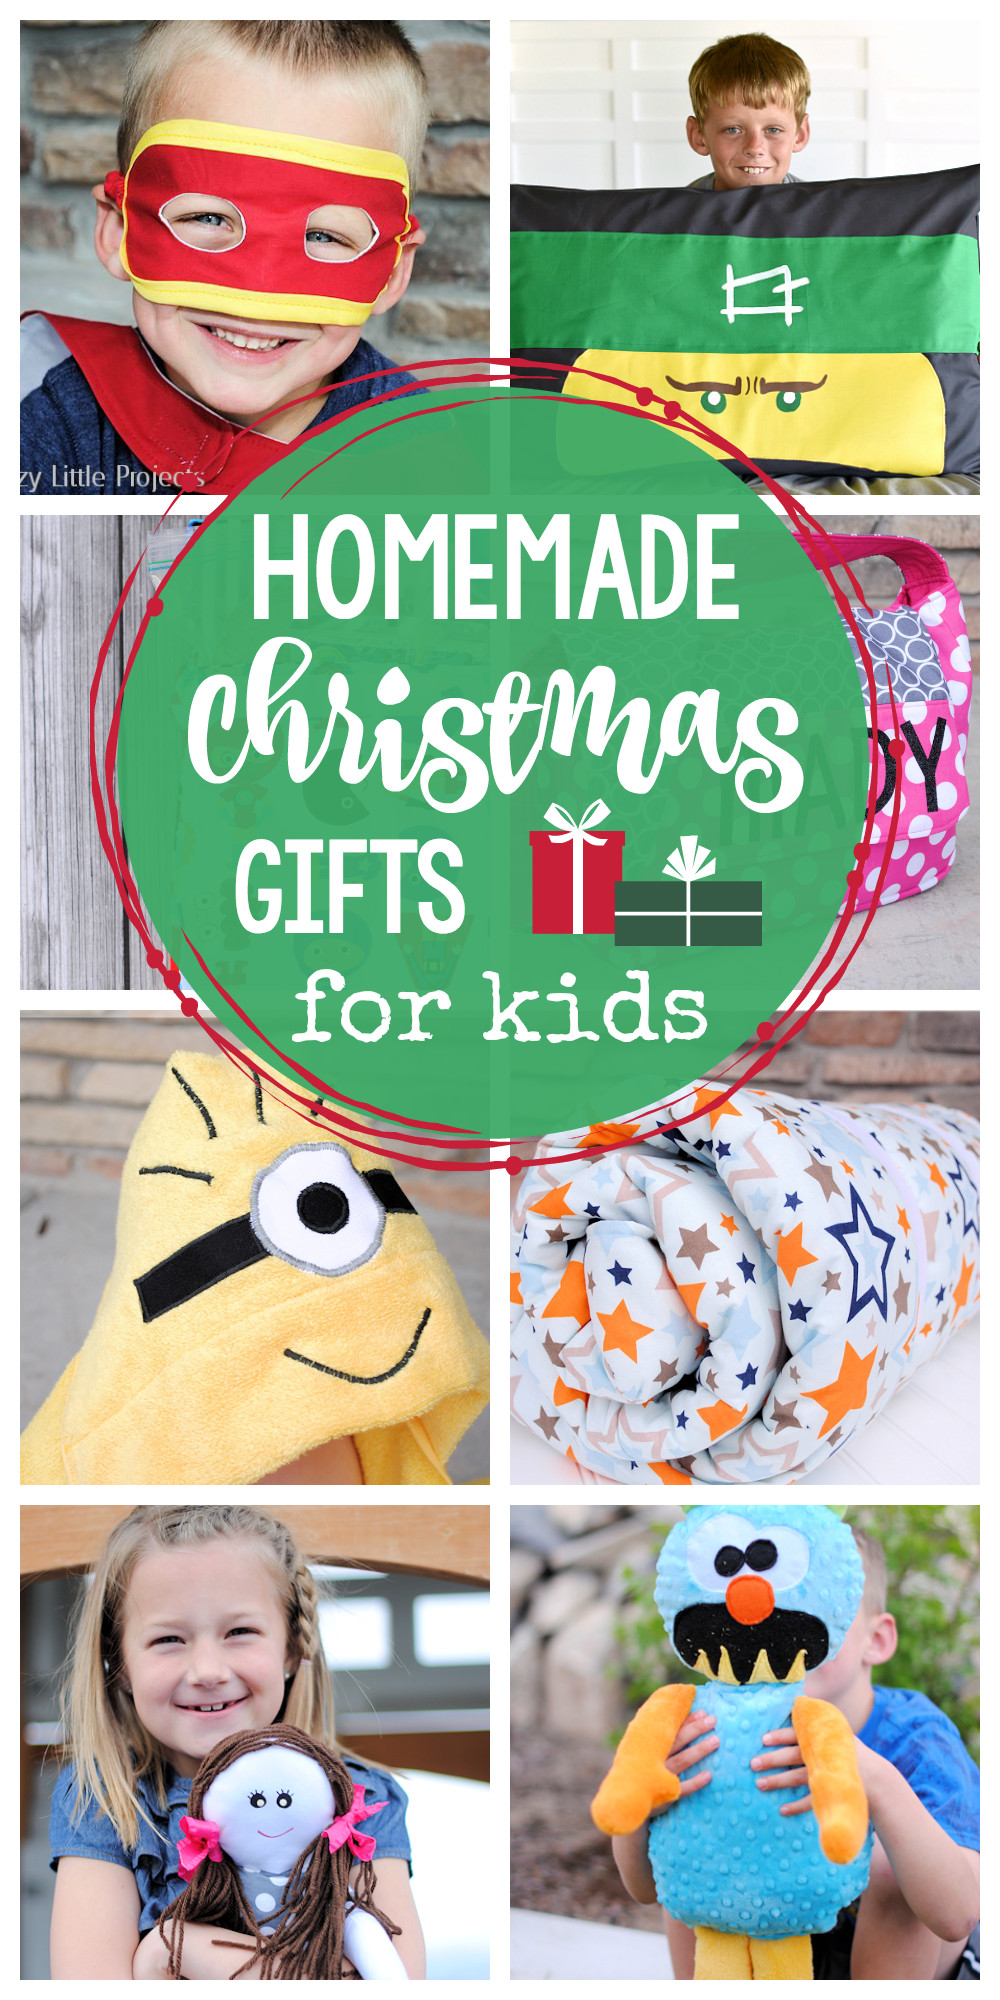 Homemade Christmas Gifts For Kids
 25 Homemade Christmas Gifts for Kids Crazy Little Projects